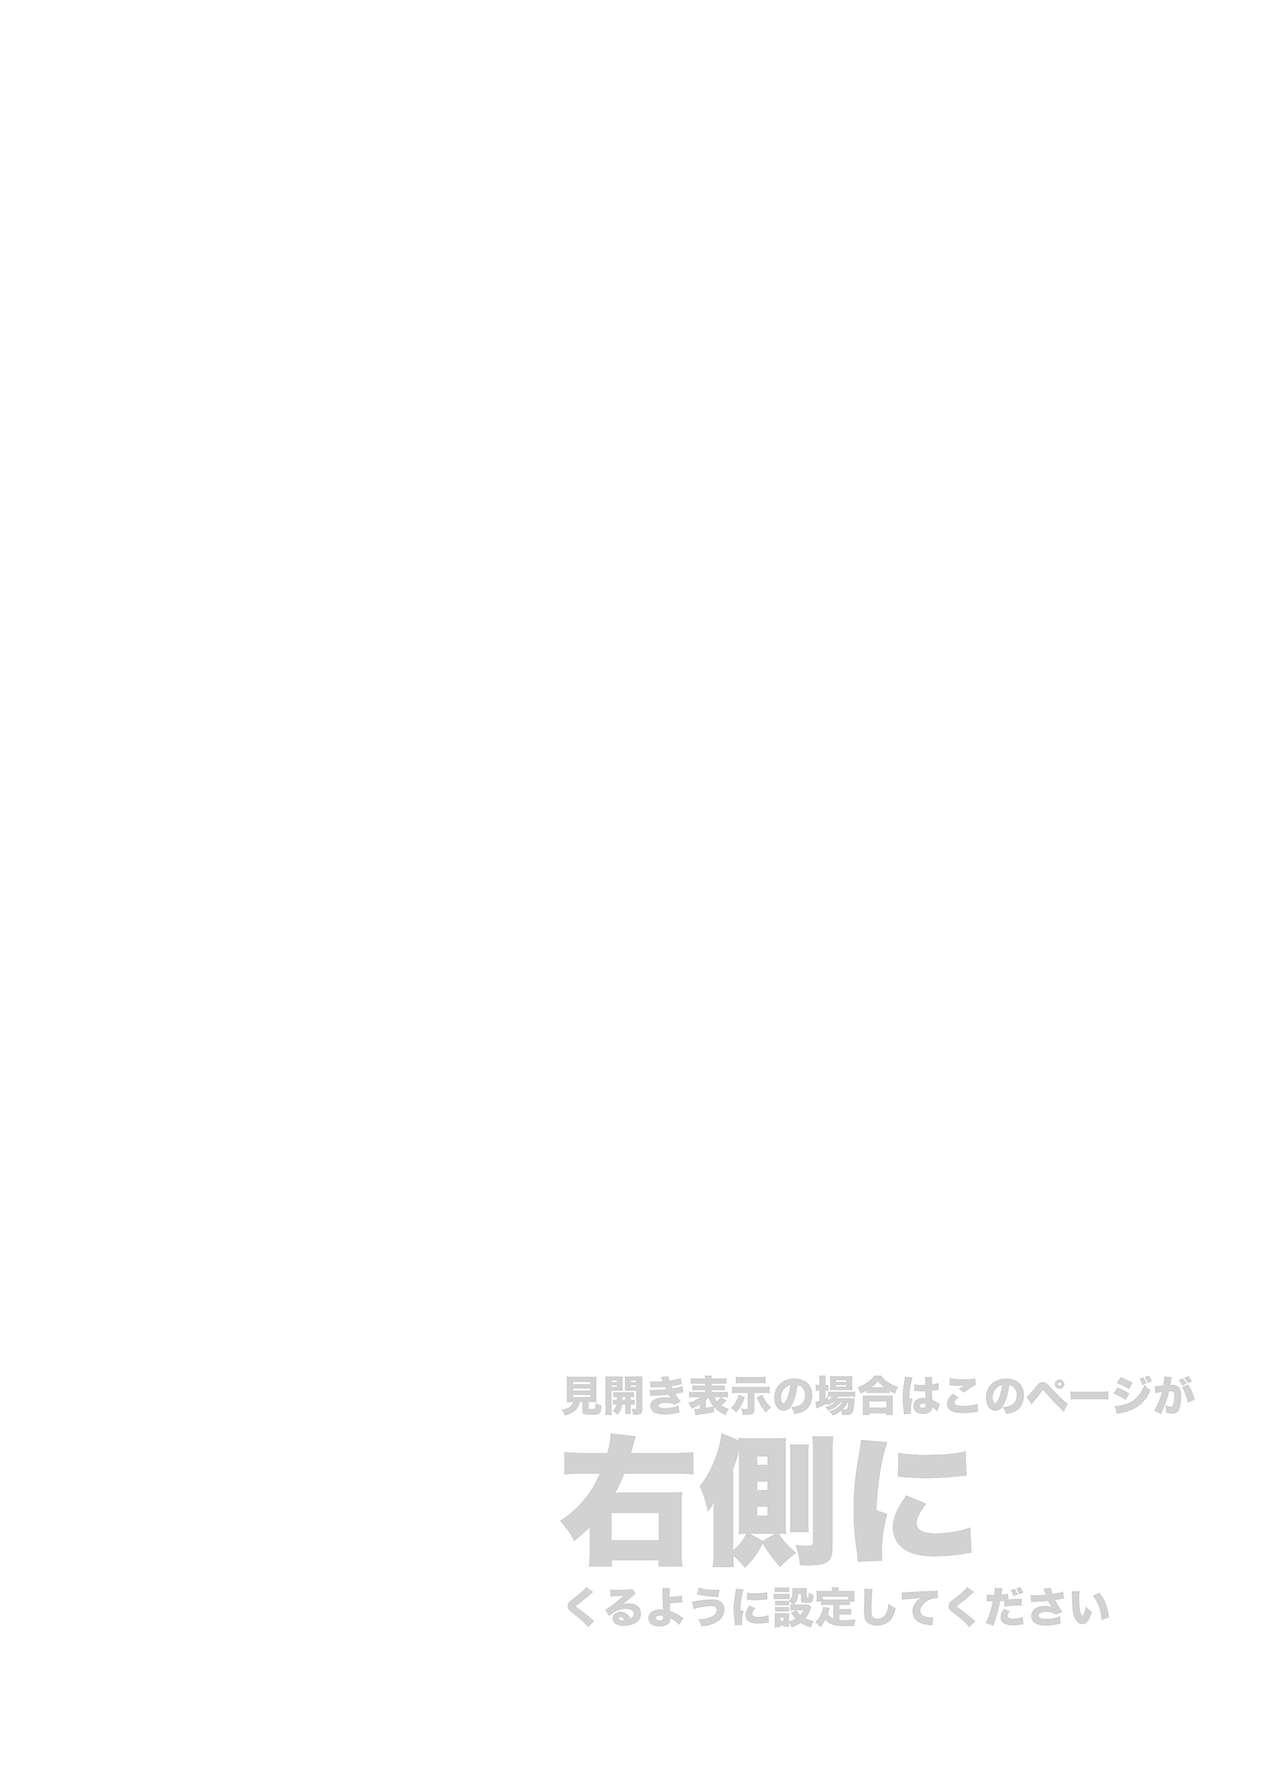 Blowjob Contest Kore wa Kintore Nanda Honto dayo Shinjite - Mobile suit gundam tekketsu no orphans Culazo - Picture 2